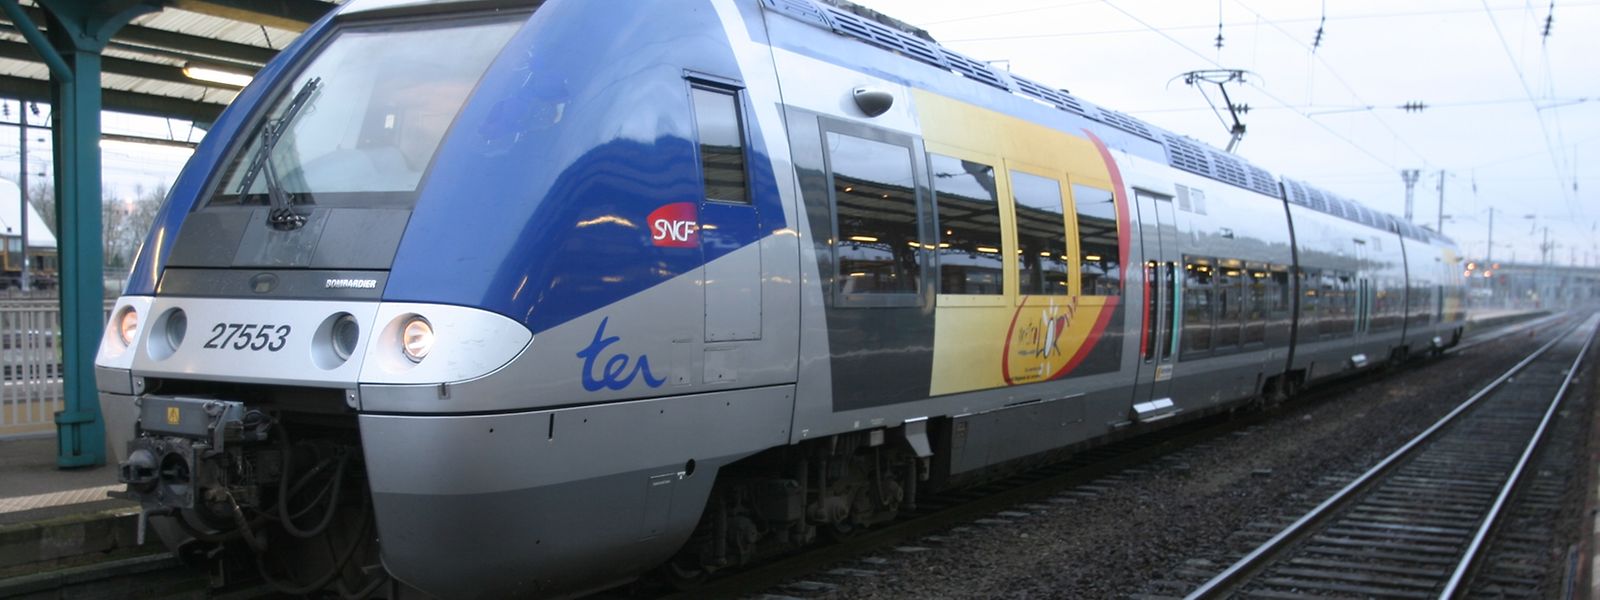 Jean-Pierre Masseret fait état dans son courrier adressé au président régional de la SNCF de «problèmes considérables de réalisation et de régularité du service sur l'axe» Metz-Luxembourg, qui «sont apparus depuis dix jours».